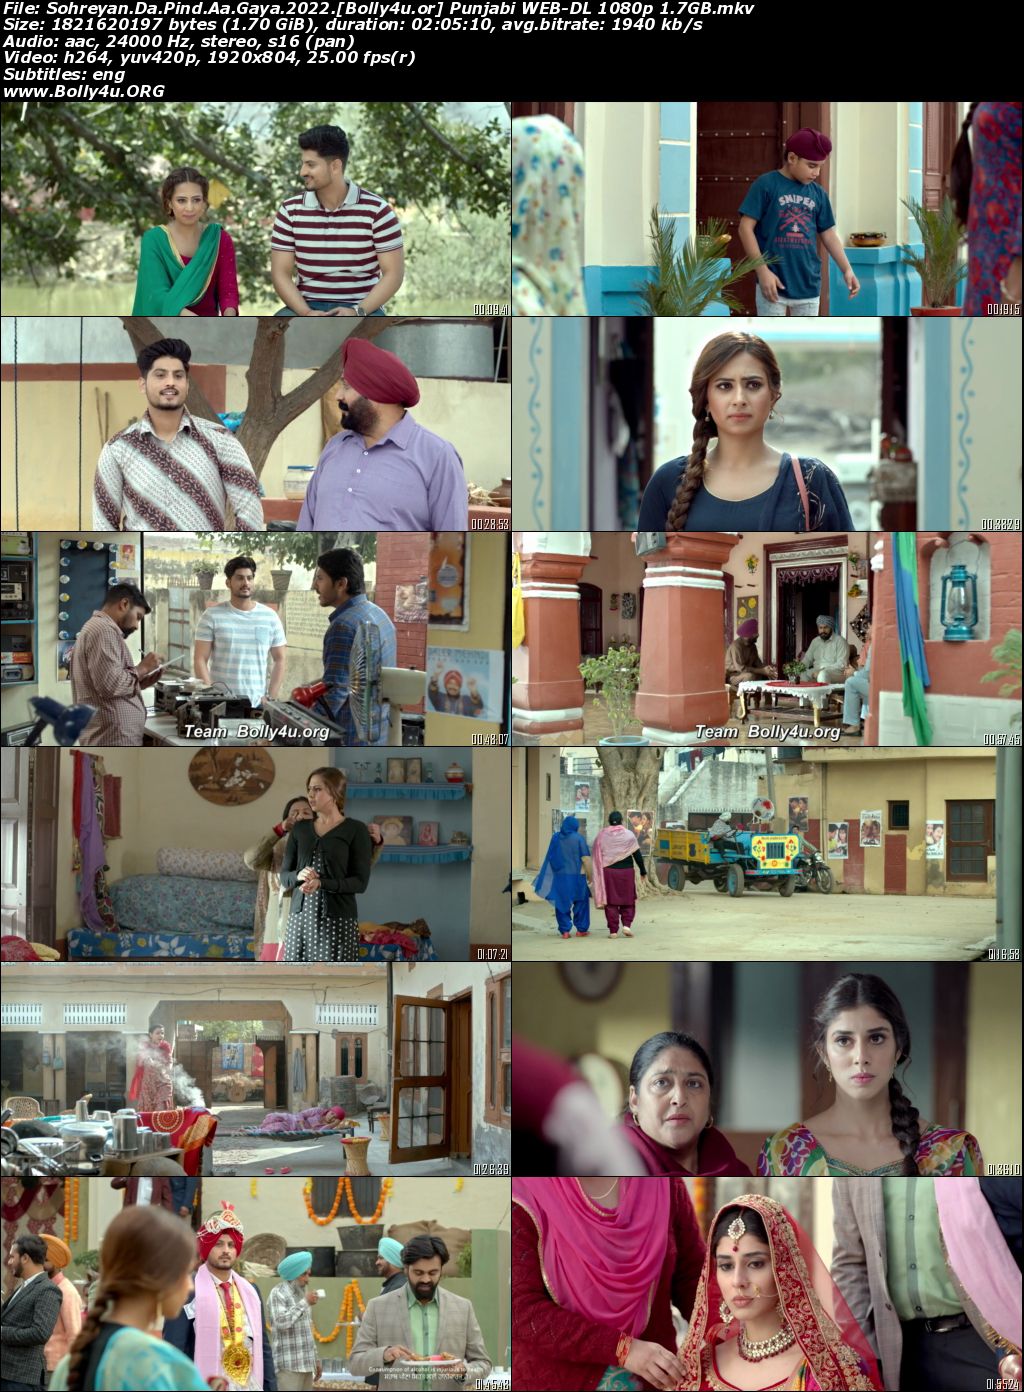 Sohreyan Da Pind Aa Gaya 2022 WEB-DL Punjabi Full Movie Download 1080p 720p 480p